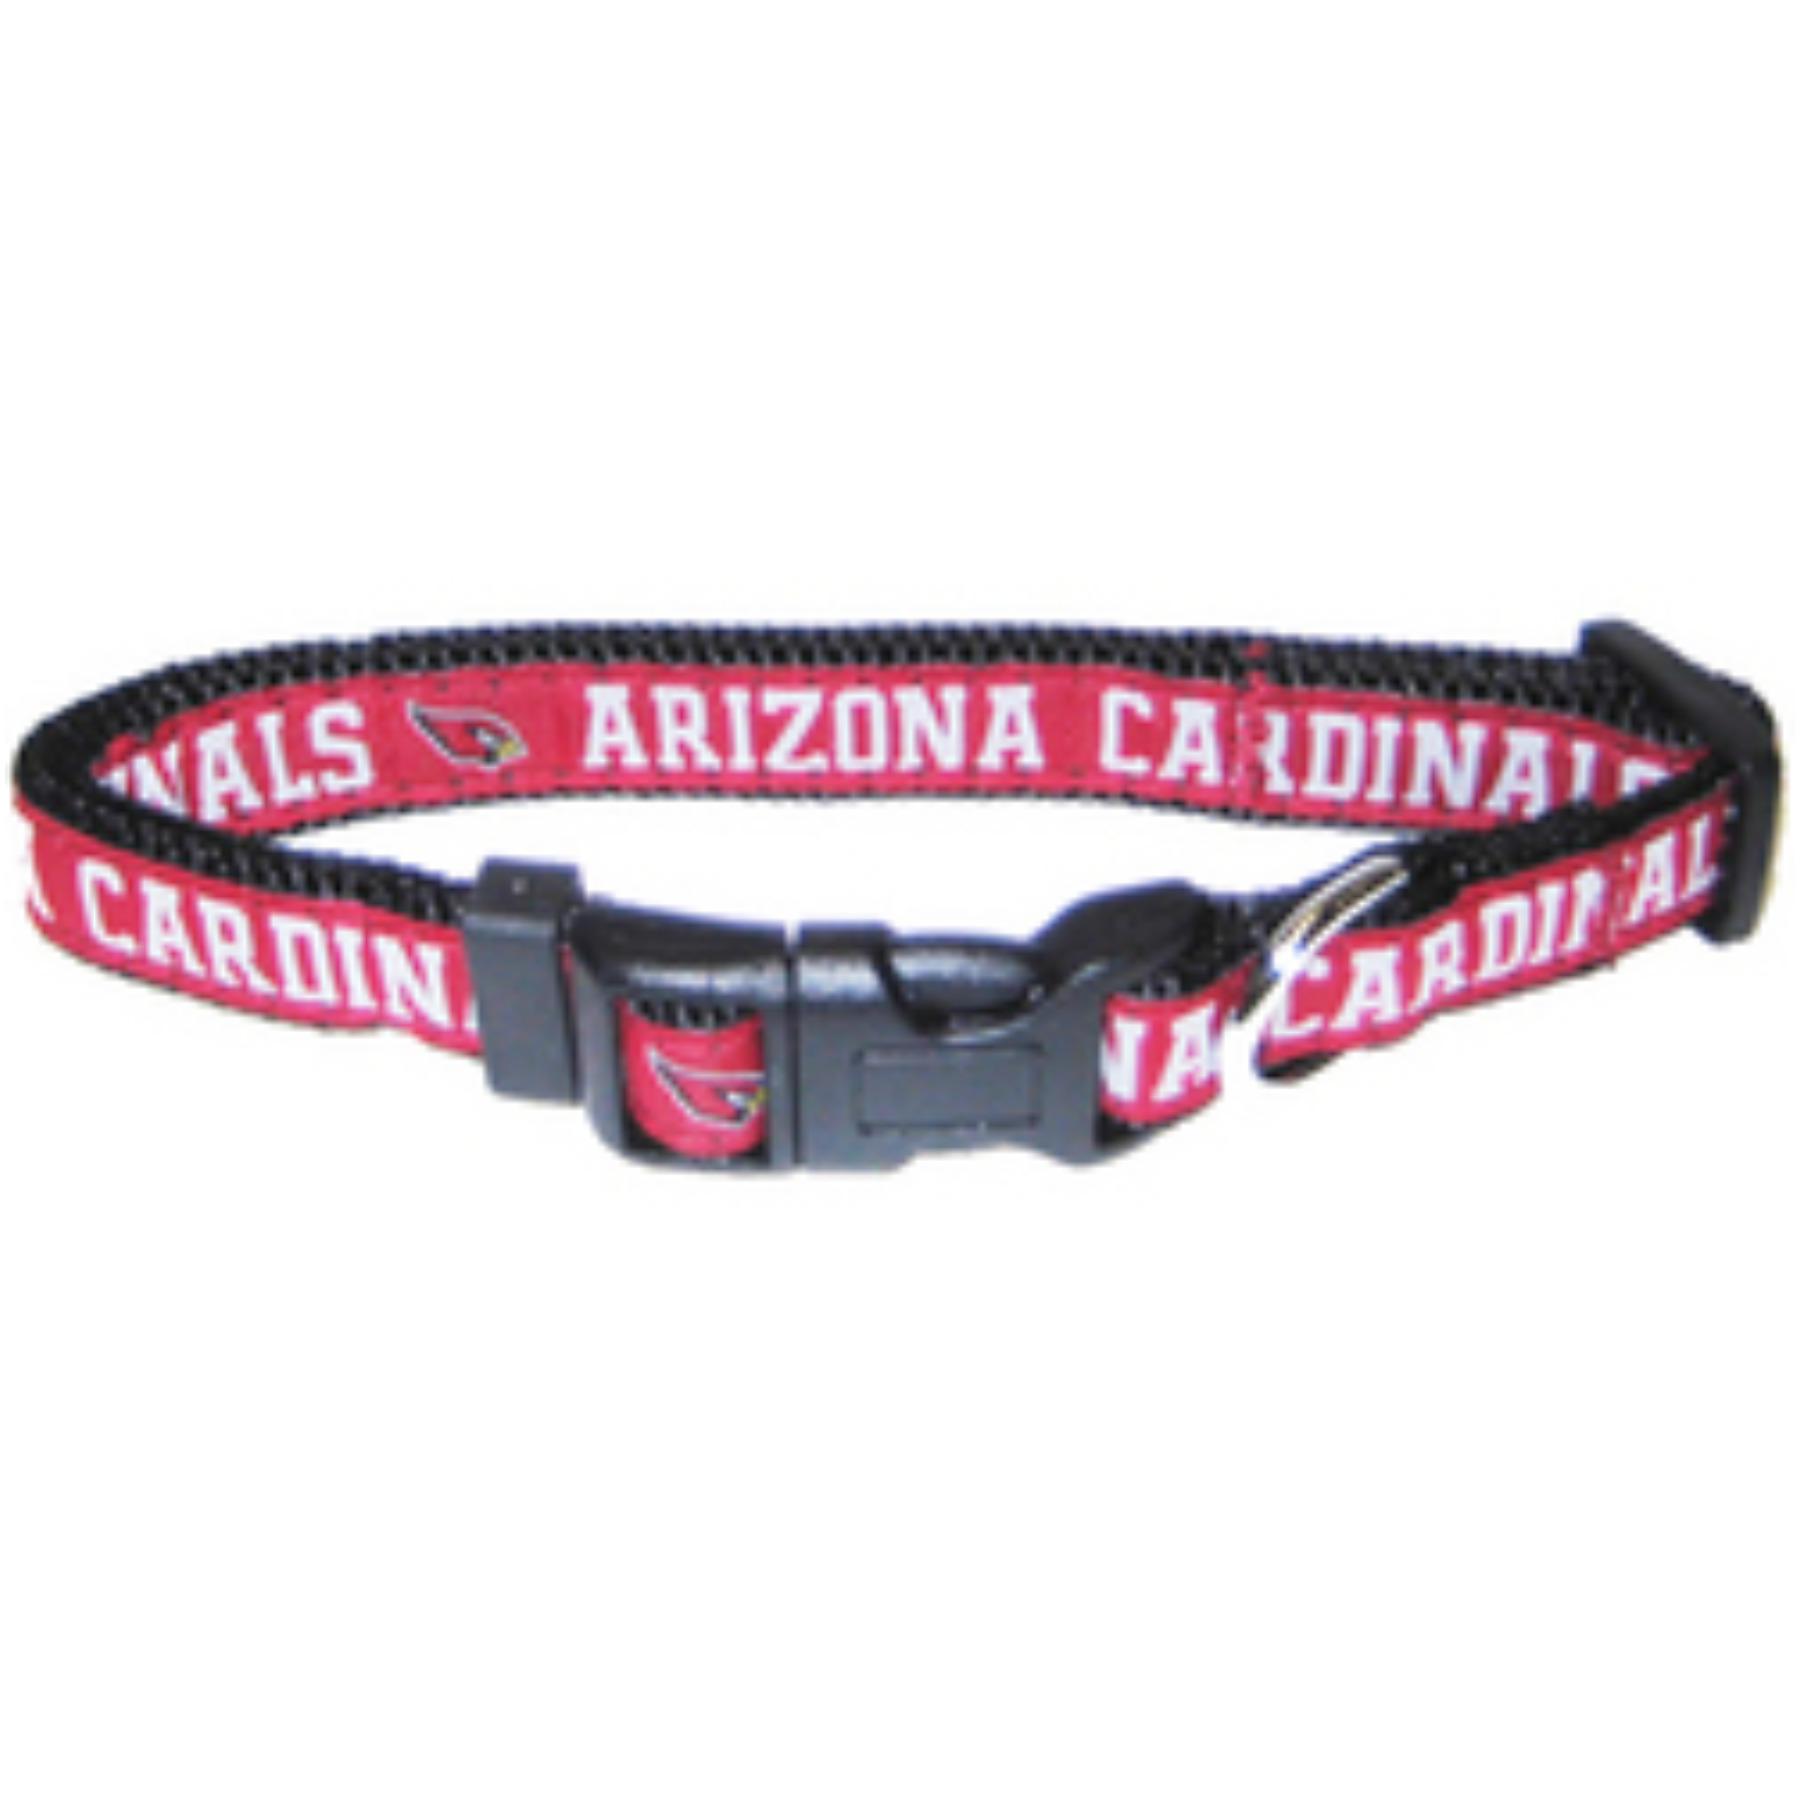 Atlanta Falcons Dog Collar -Ribbon